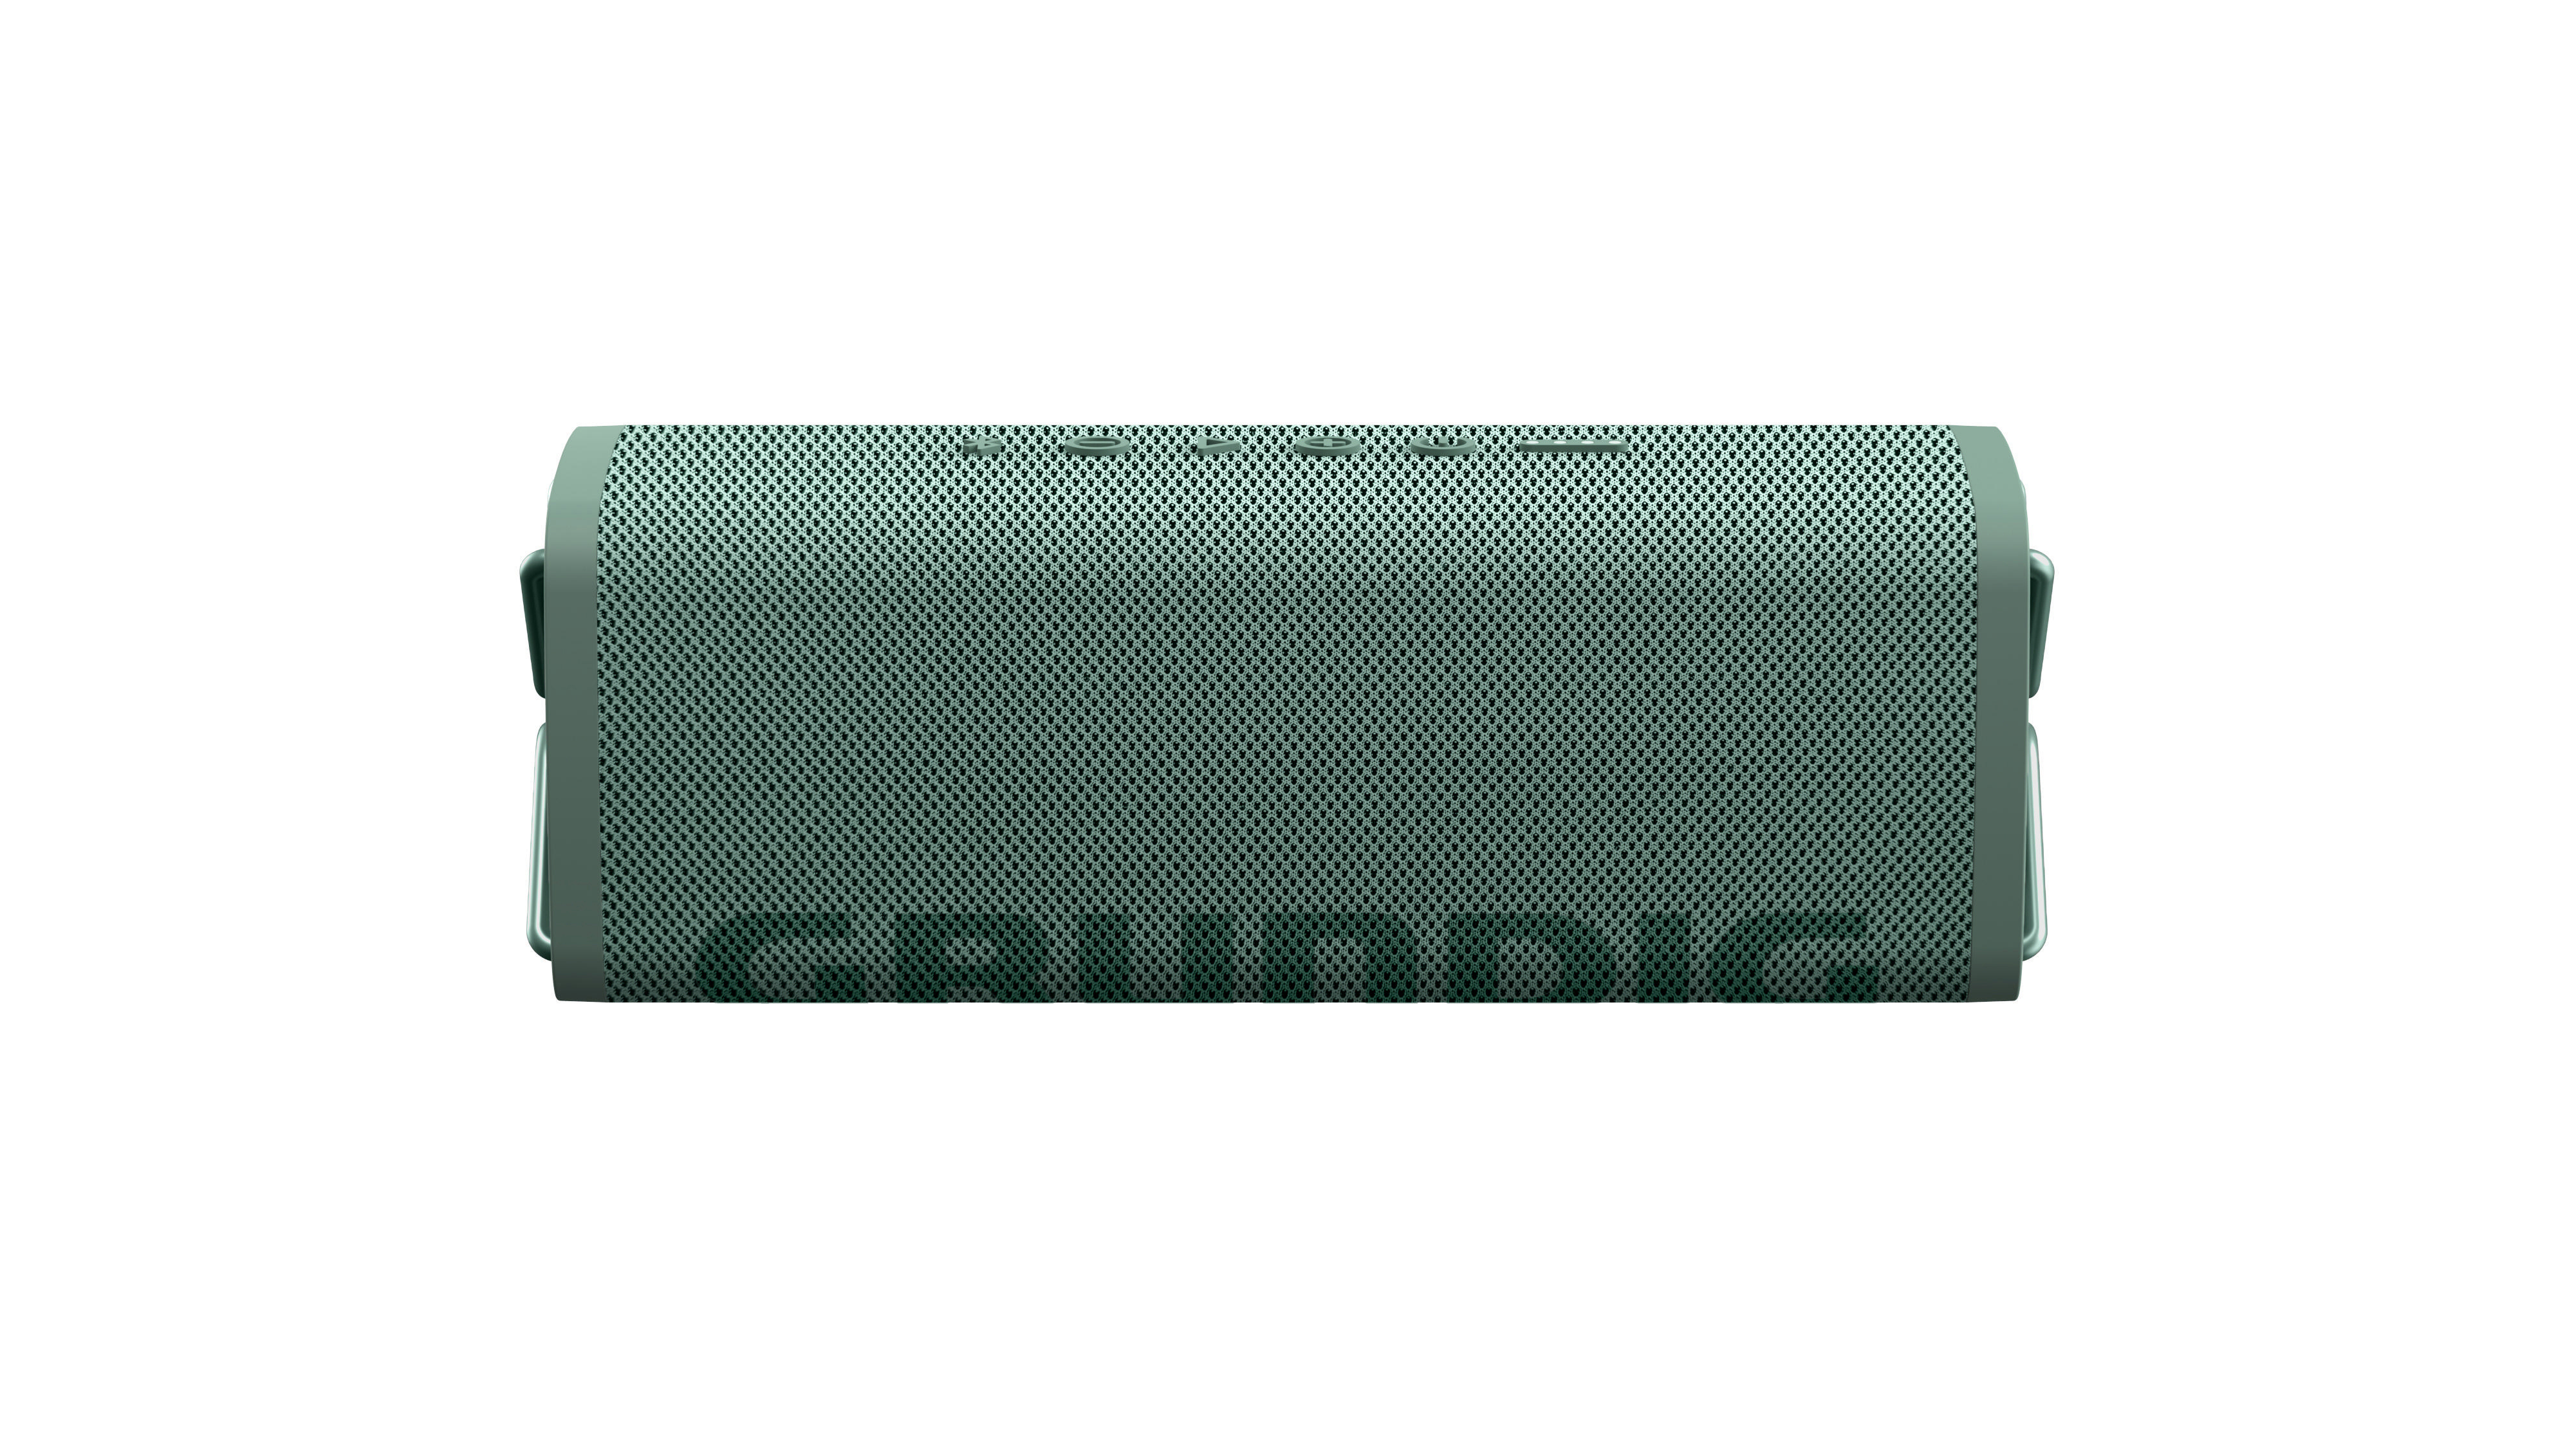 GRUNDIG GBT CLUB Bluetooth Lautsprecher, Grün, Wasserfest